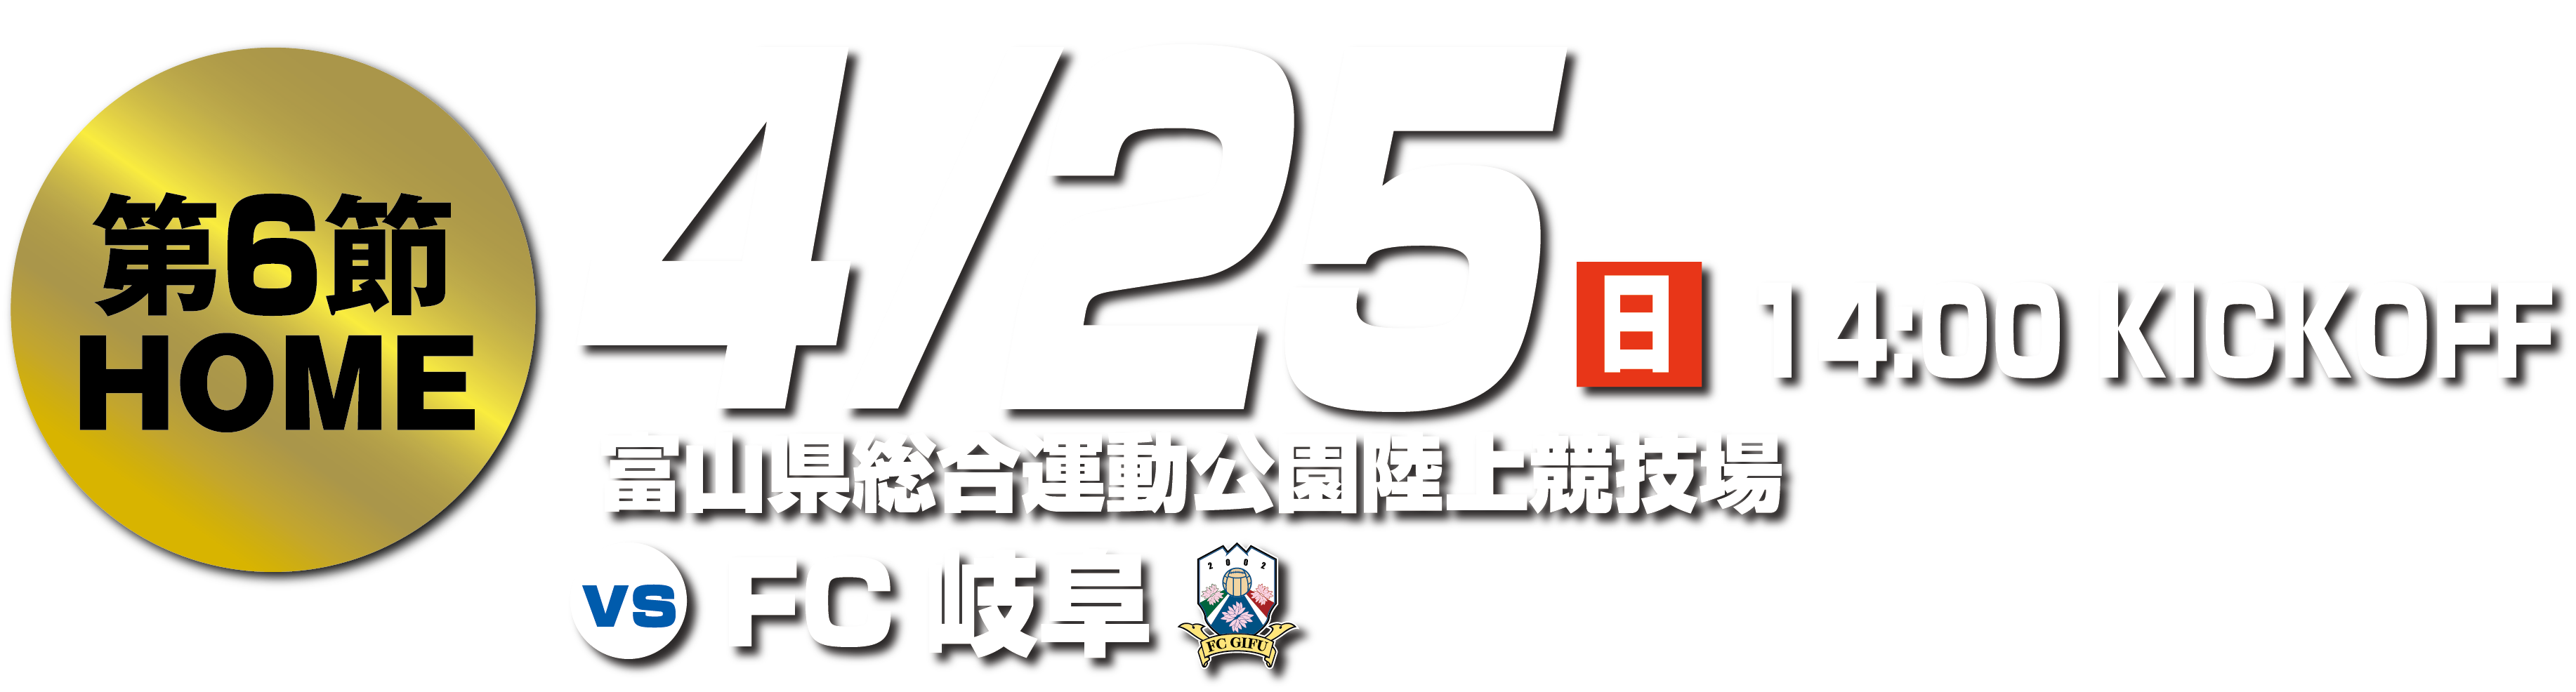 4 25岐阜戦 ホームゲーム情報 カターレ富山公式ウェブサイト